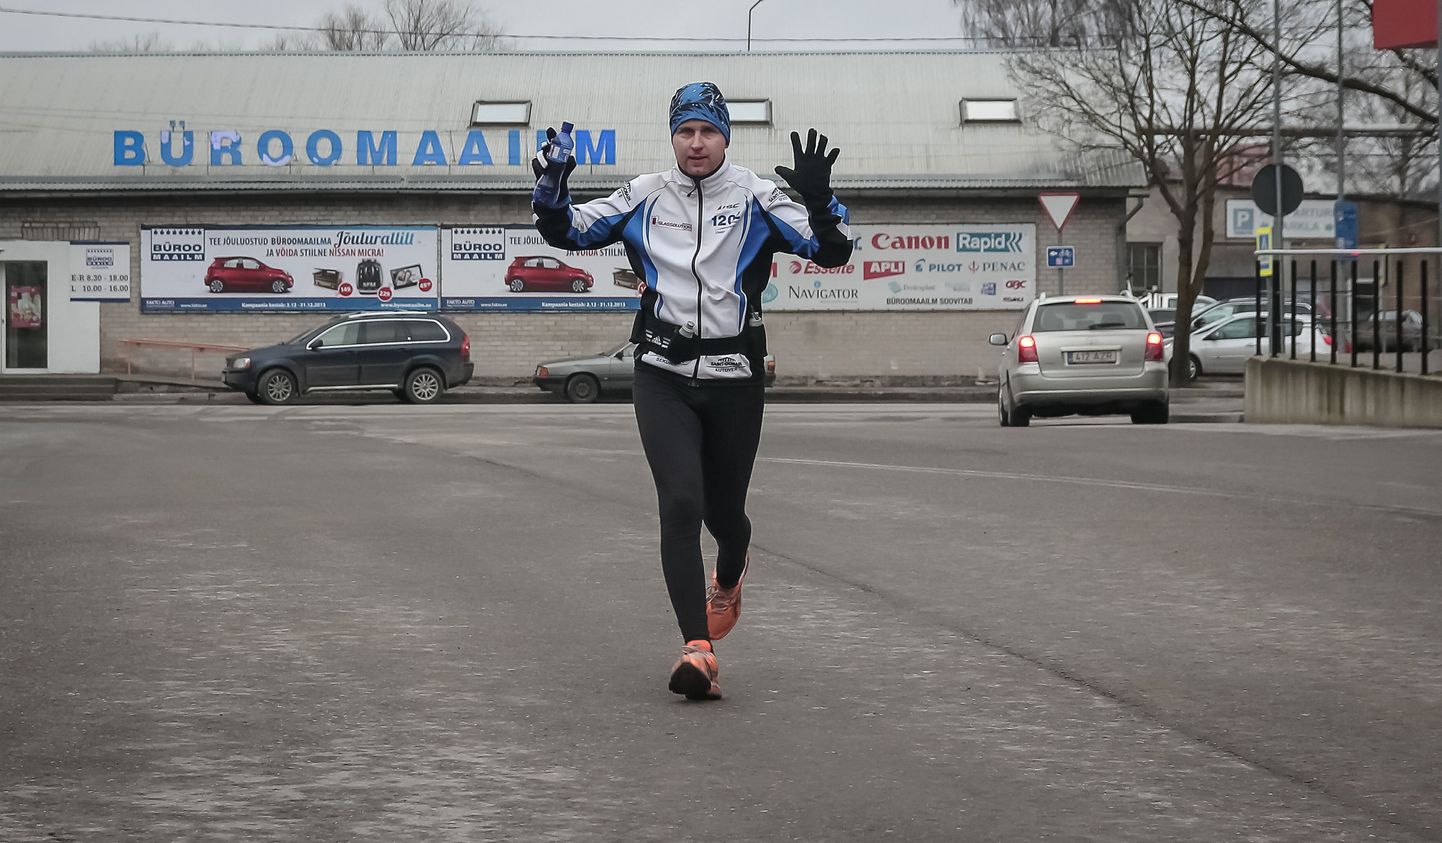 29aastane Elva mees Kaarel Tõruvere saatis vana aasta ära maratonijooksuga Vändrast Pärnusse.